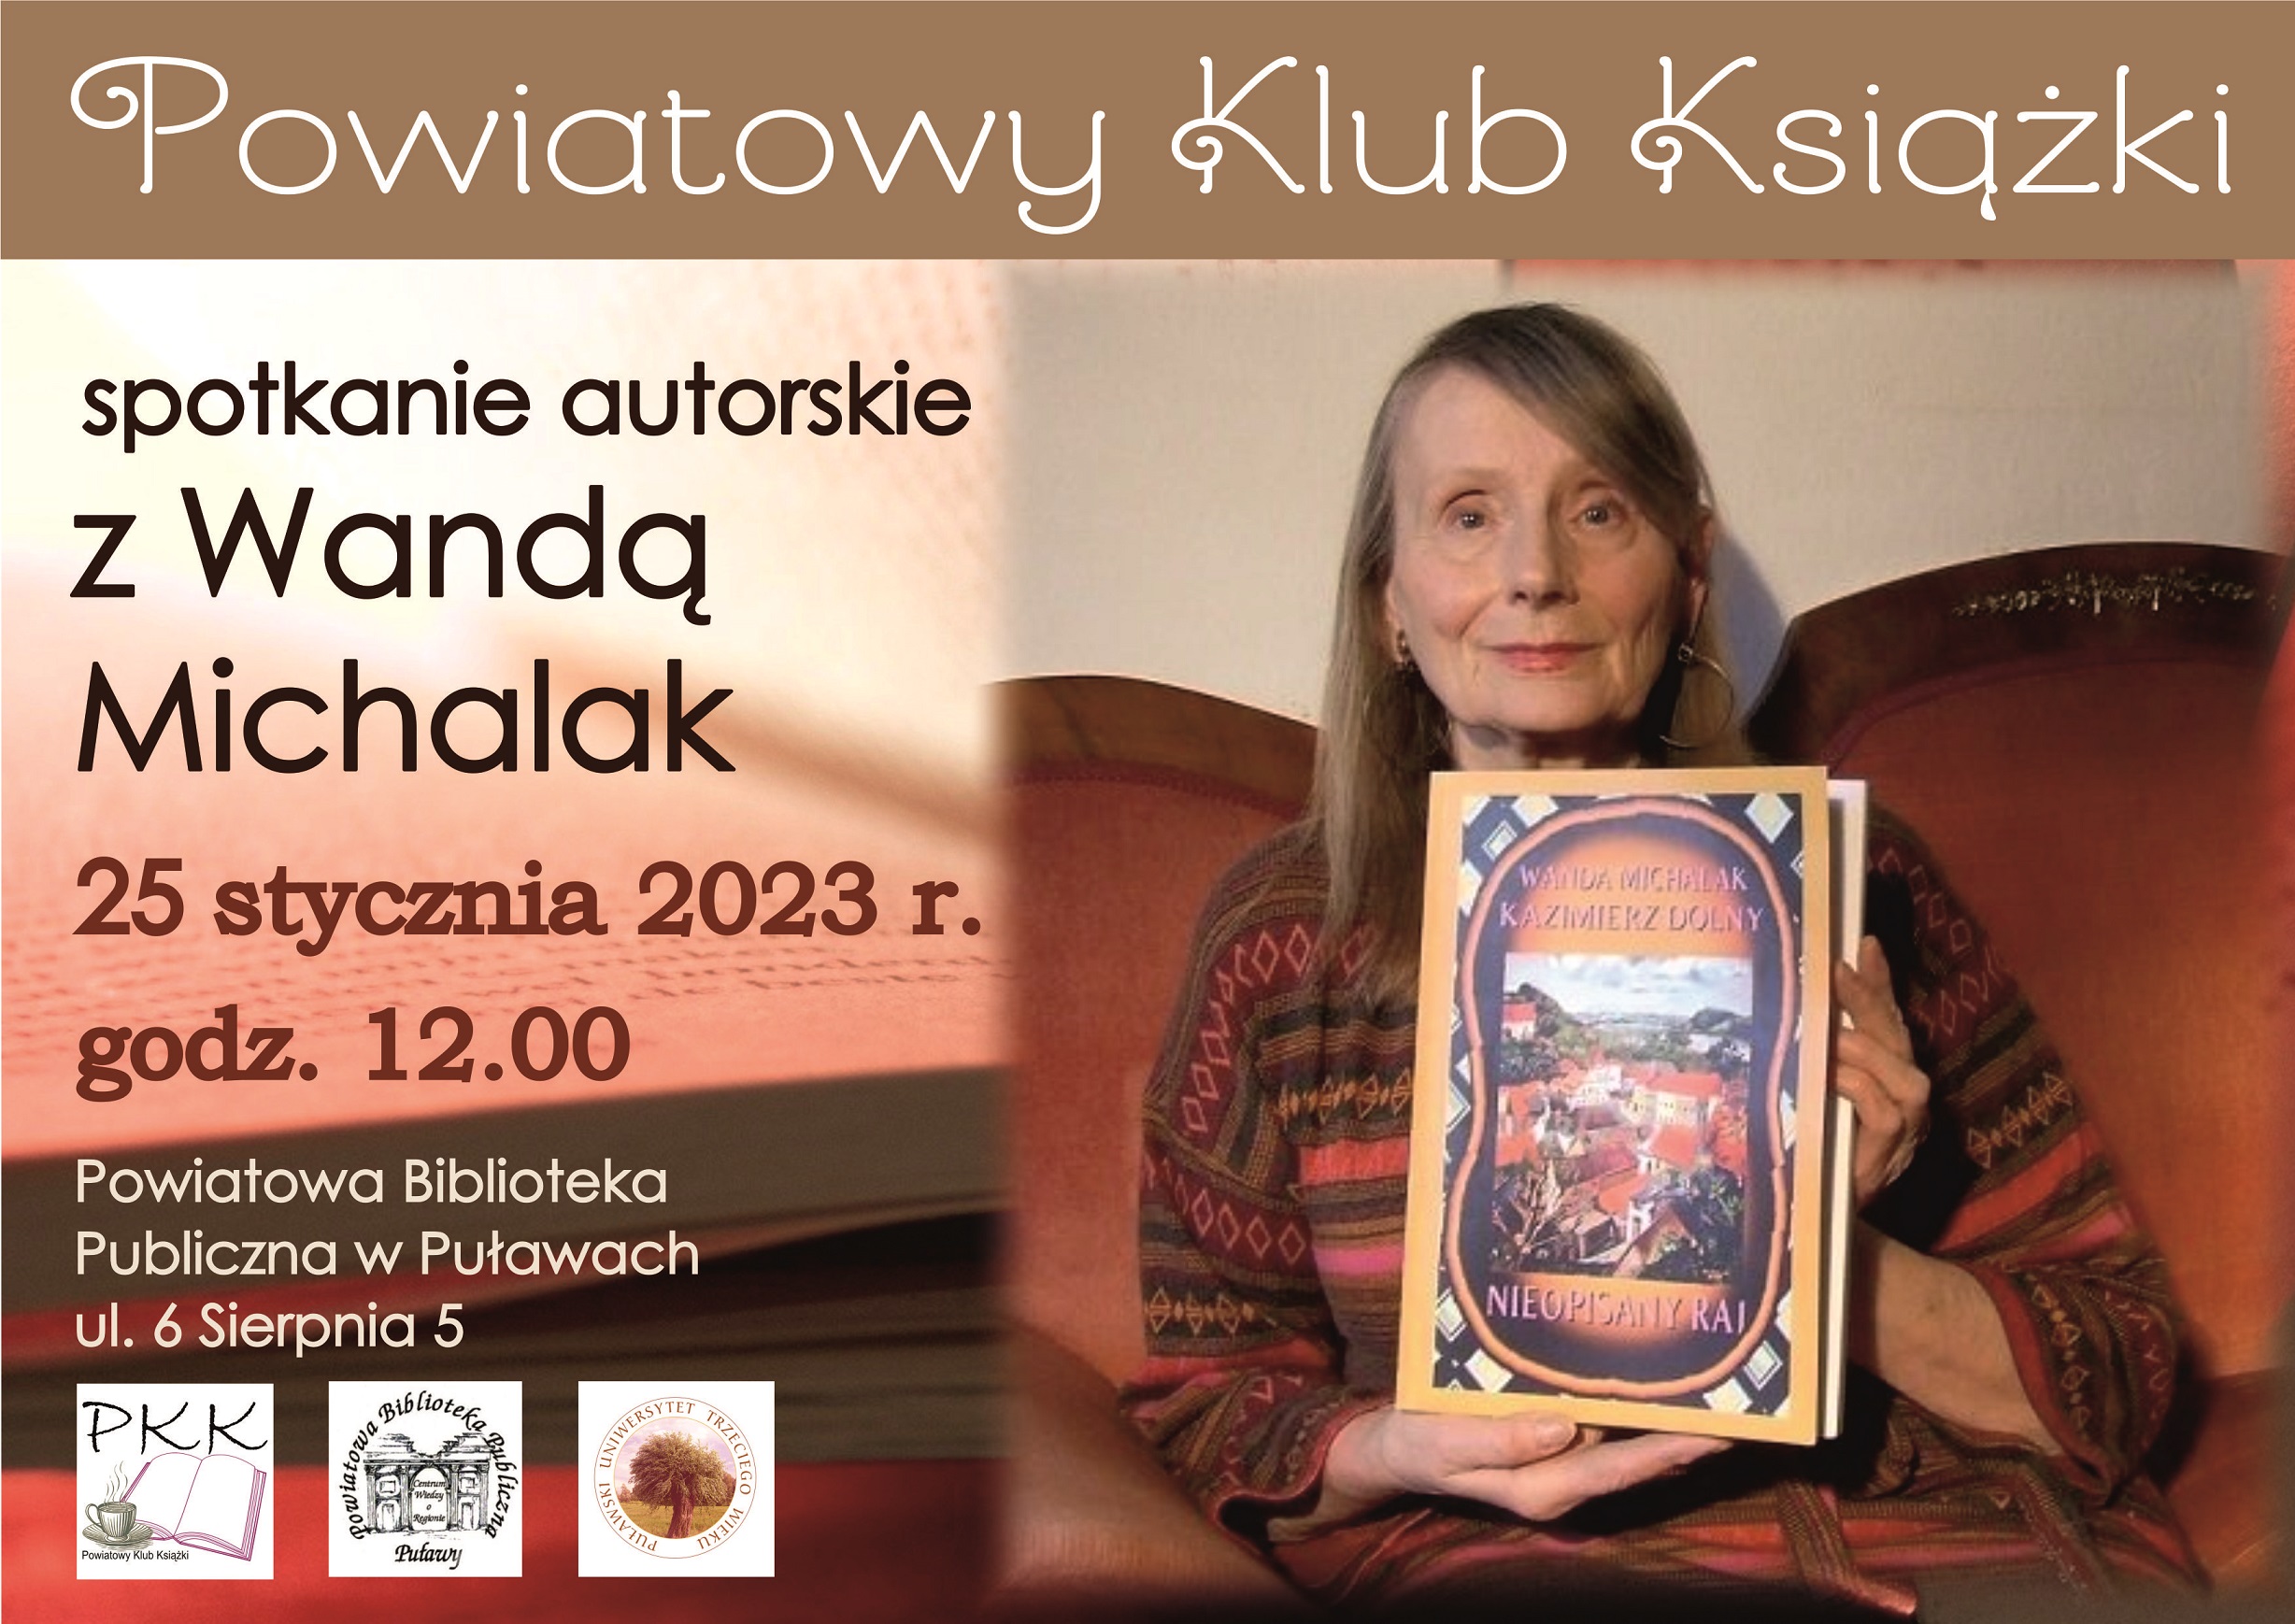 Zdjęcie prezentuje plakat zapraszający na spotkanie autorskie z Wandą Michalak w ramach Powiatowego Klubku Książki.